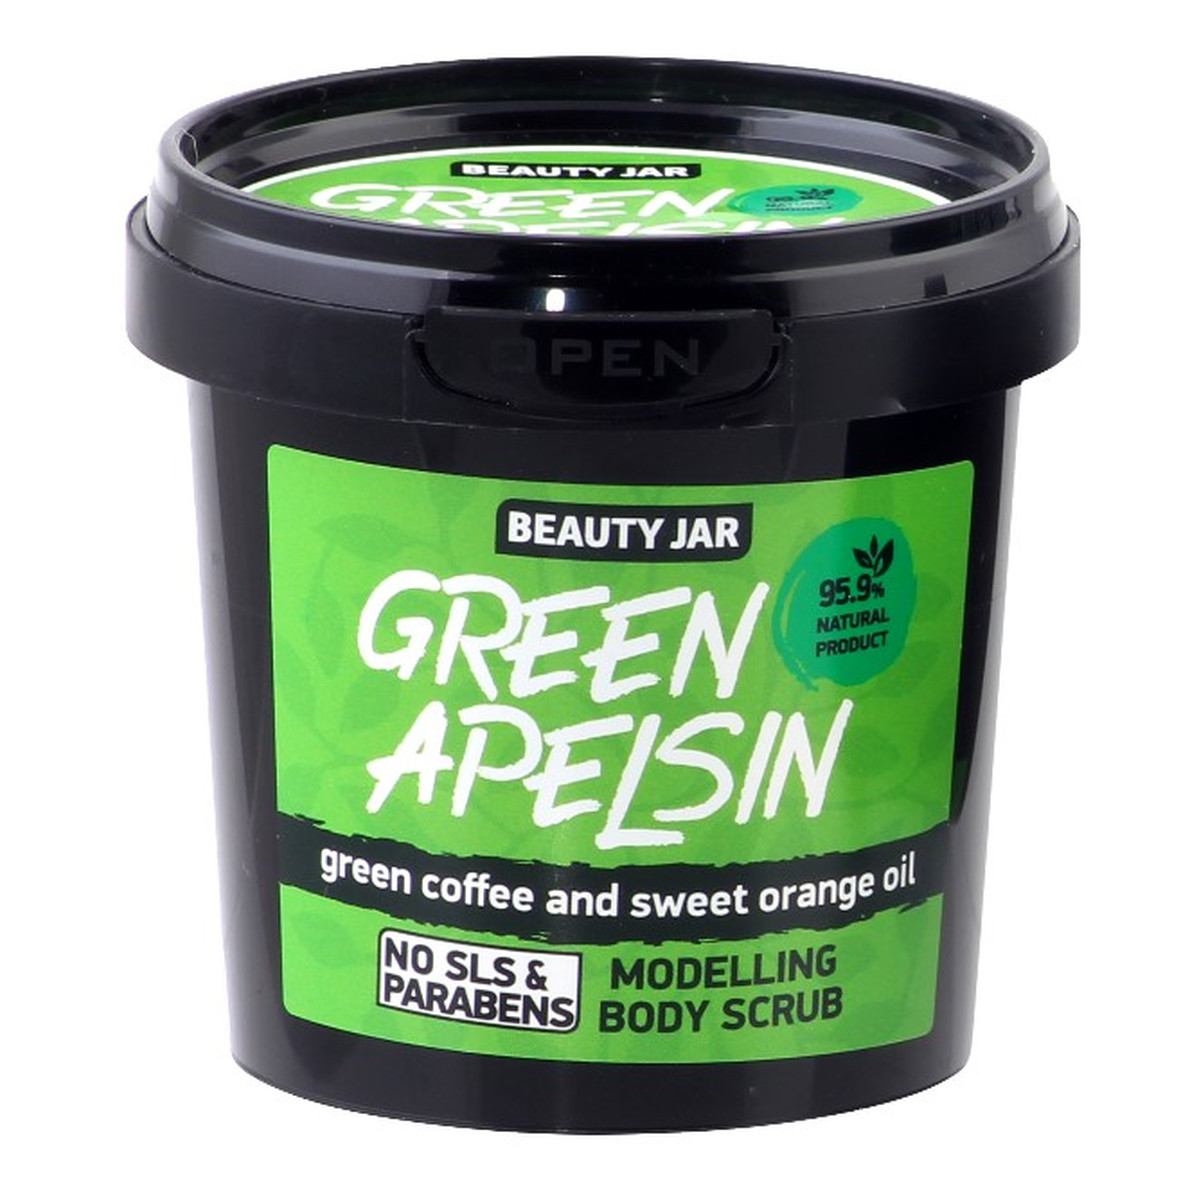 Beauty Jar GREEN APELSIN Modelujący scrub do ciała Ekstrakt zielonej kawy i olejek pomarańczowy 200g